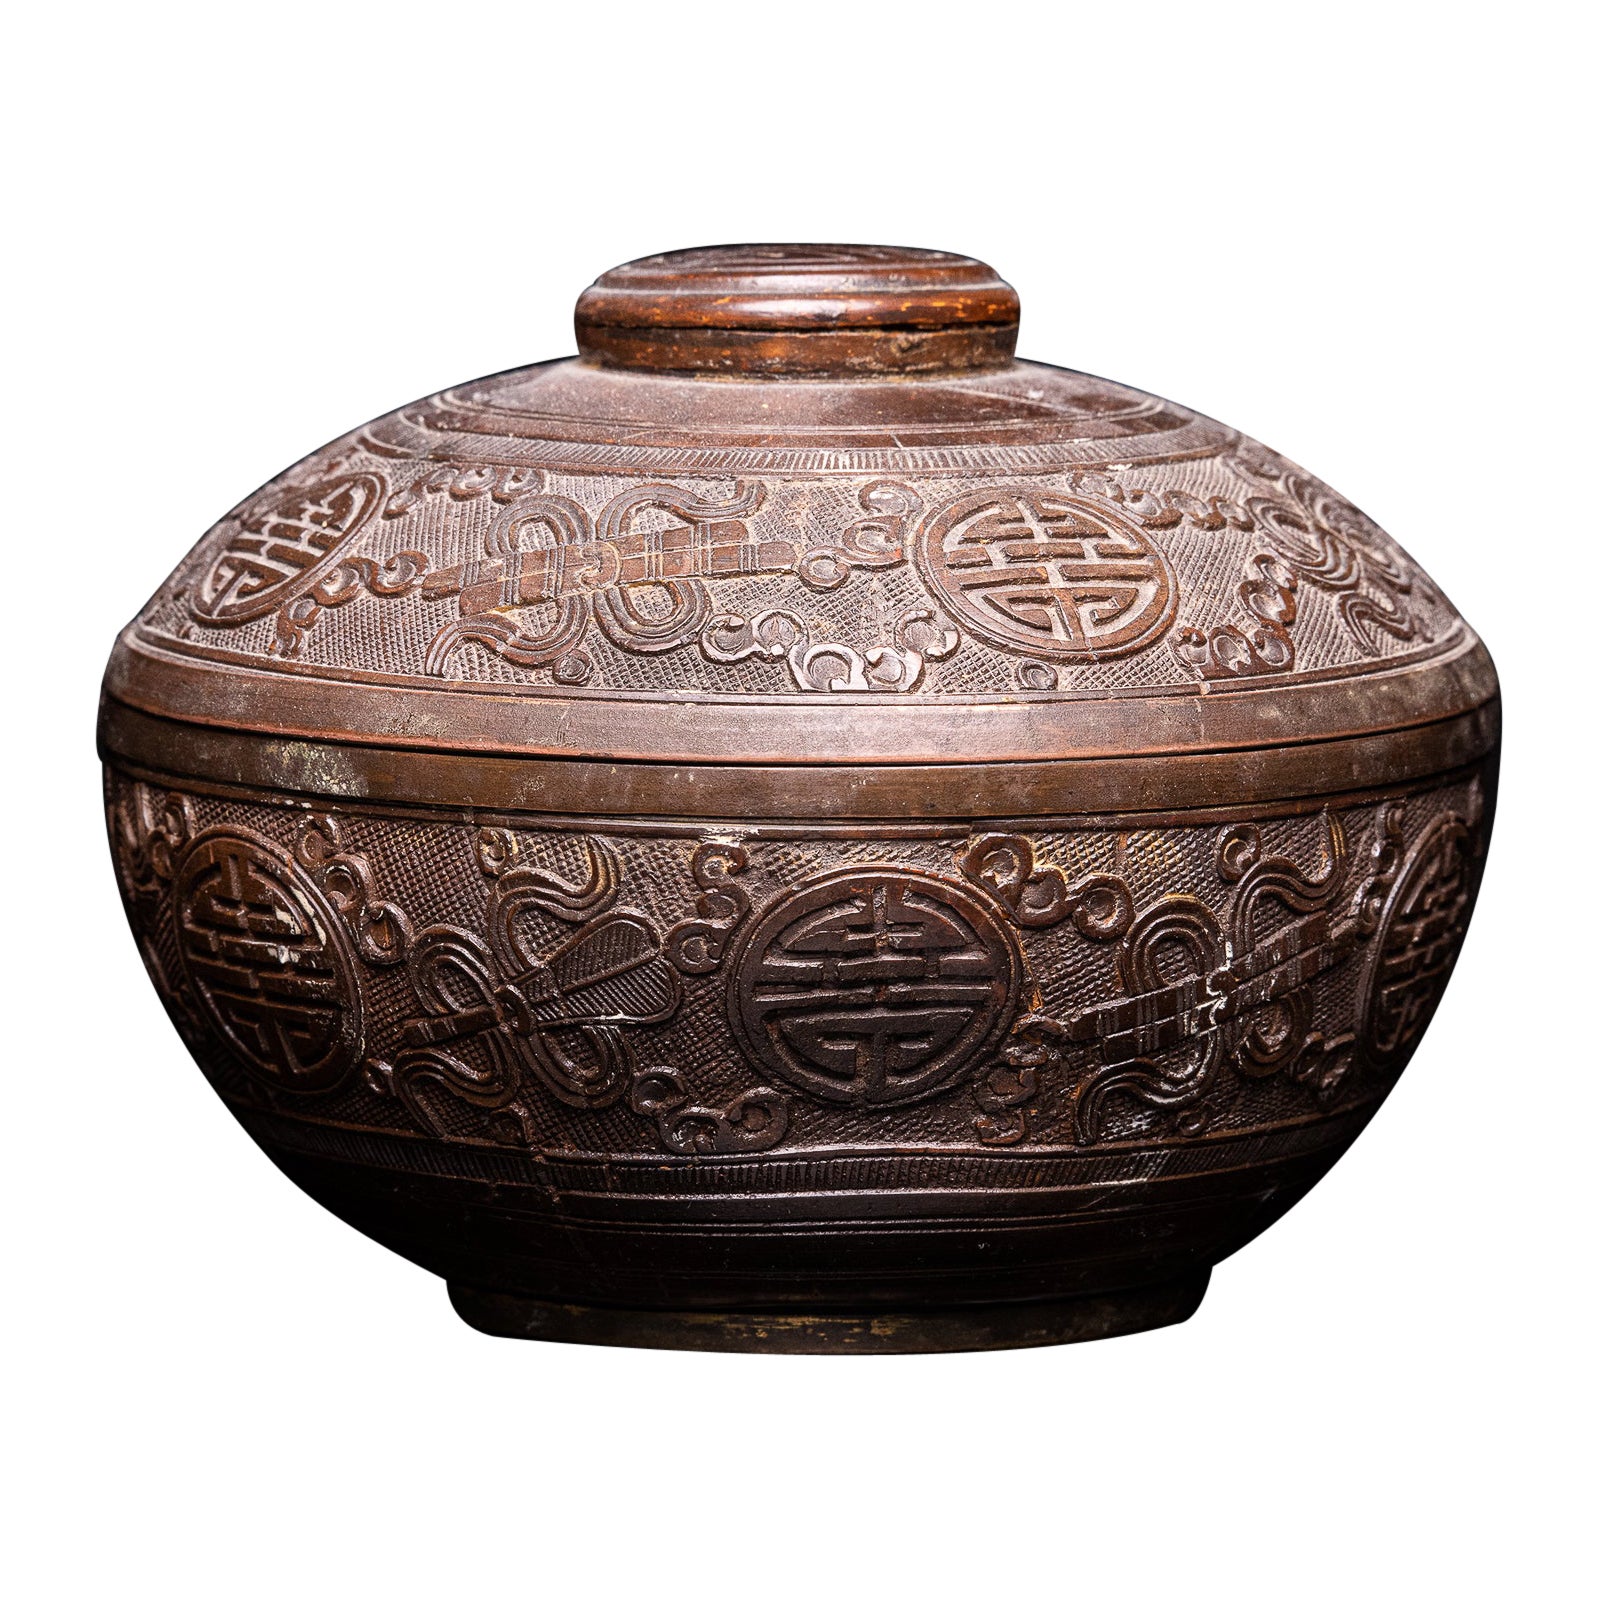 Antike asiatische verzierte Aufbewahrungsschale mit Deckel, geschnitzt aus Kokosnussschalenporzellan